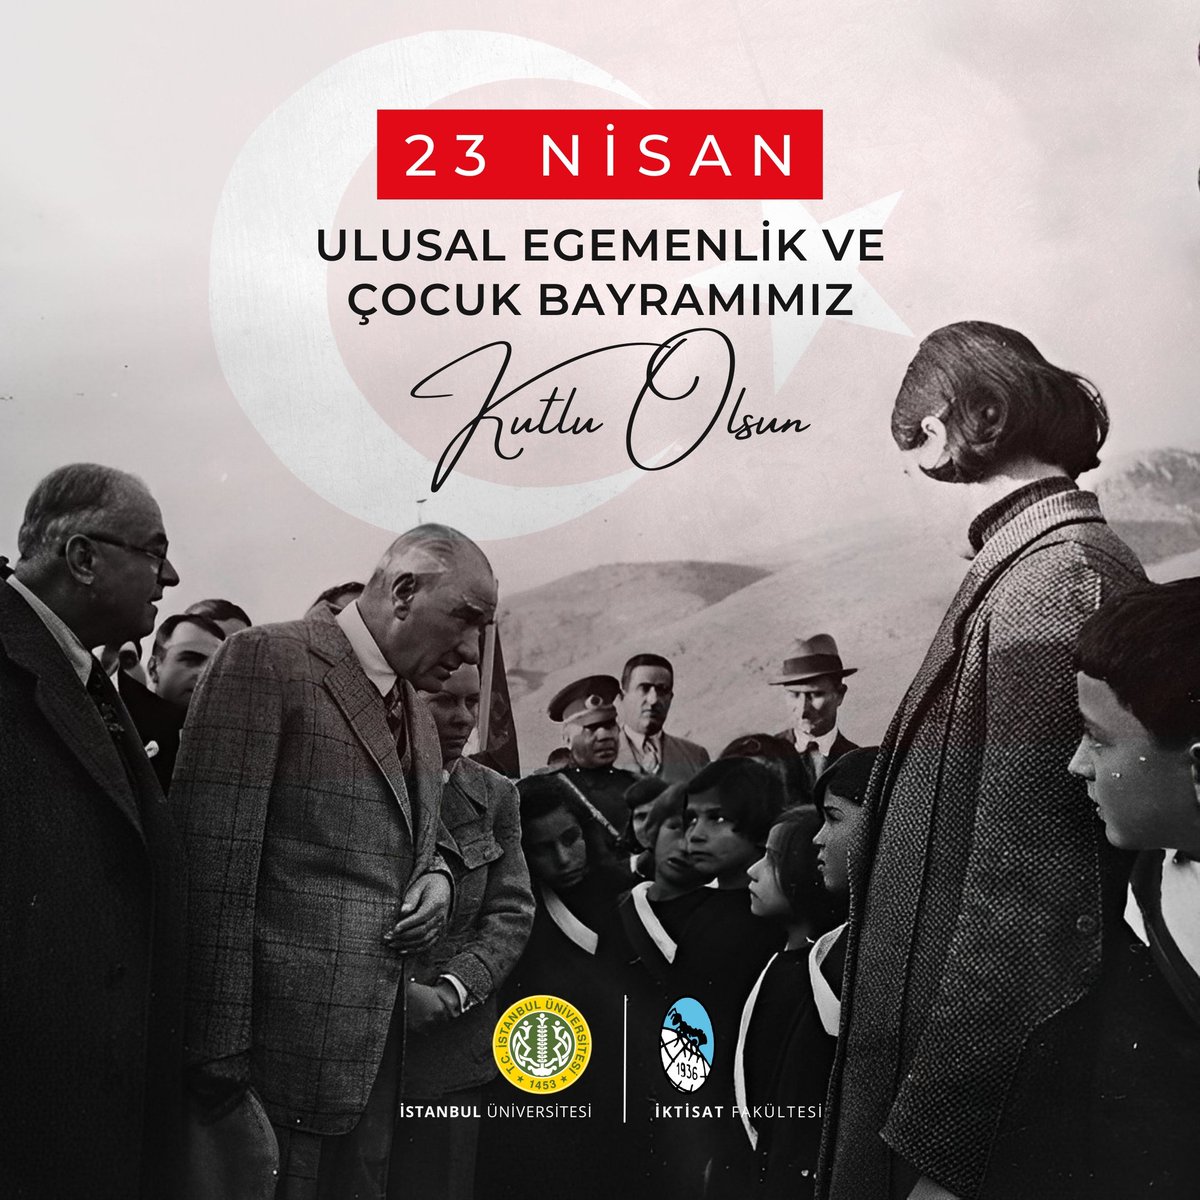 Bugün, ulusal egemenliğimizin ve çocuklarımızın bayramı olan 23 Nisan'ı coşkuyla kutluyoruz. Büyük önderimiz Mustafa Kemal Atatürk'ün millete emanet ettiği bu kutsal değer, bağımsızlığımızın ve Cumhuriyetimizin teminatıdır. Çocuklarımız, geleceğimizin güvencesi ve umududur.